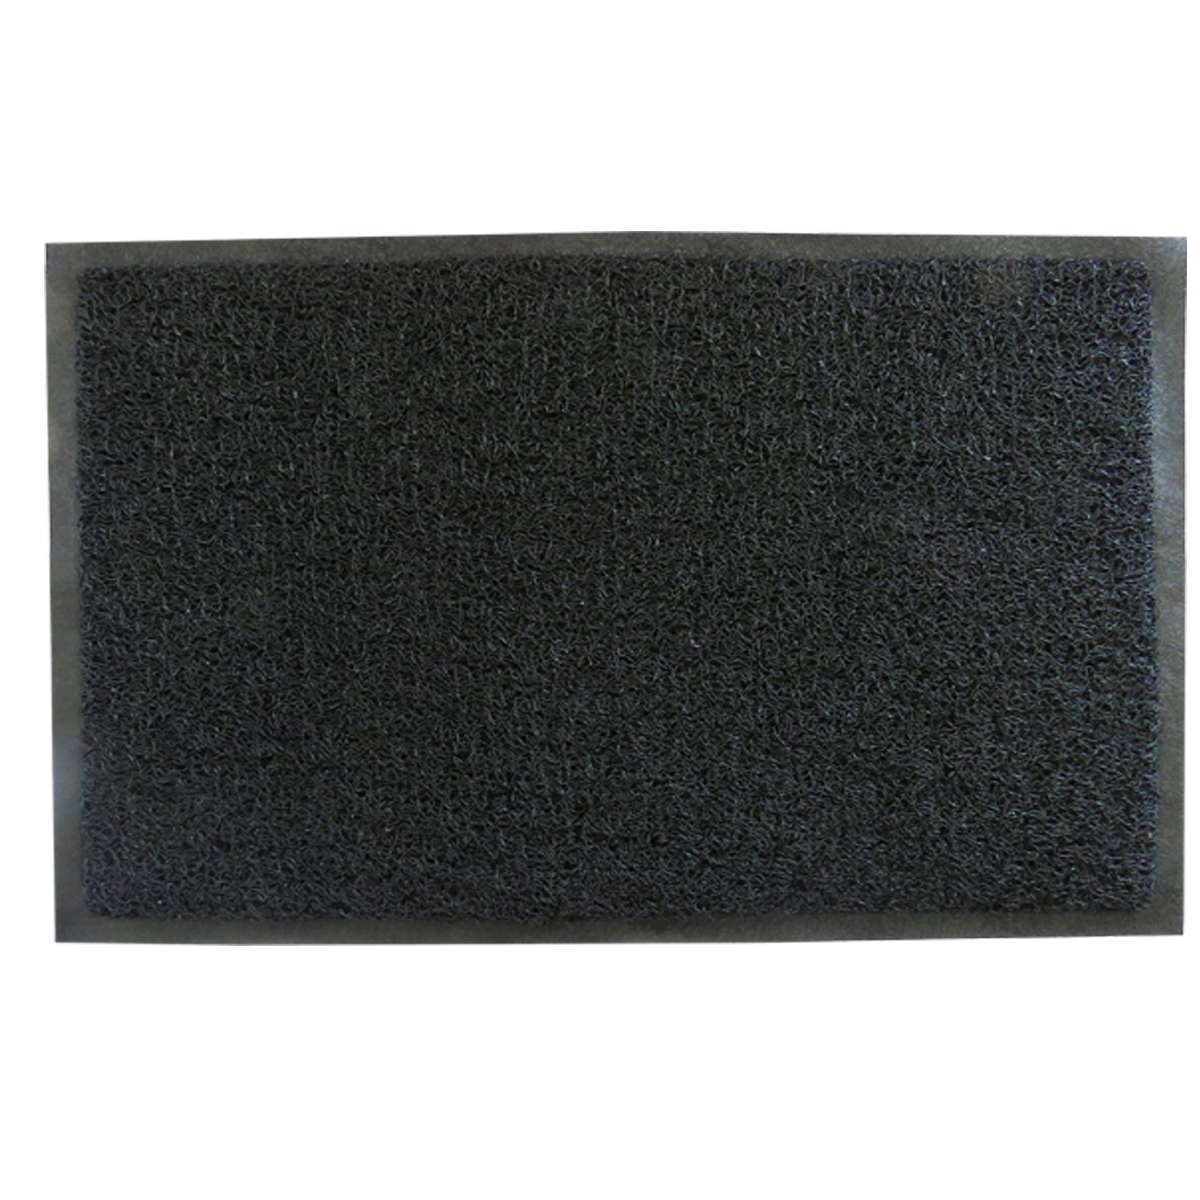 Πατάκι Εισόδου Με Υπόστρωμα Μαύρο Art Et Lumiere 90x120εκ. 06197 (Χρώμα: Μαύρο) - Art Et Lumiere - lumiere_06197 138138